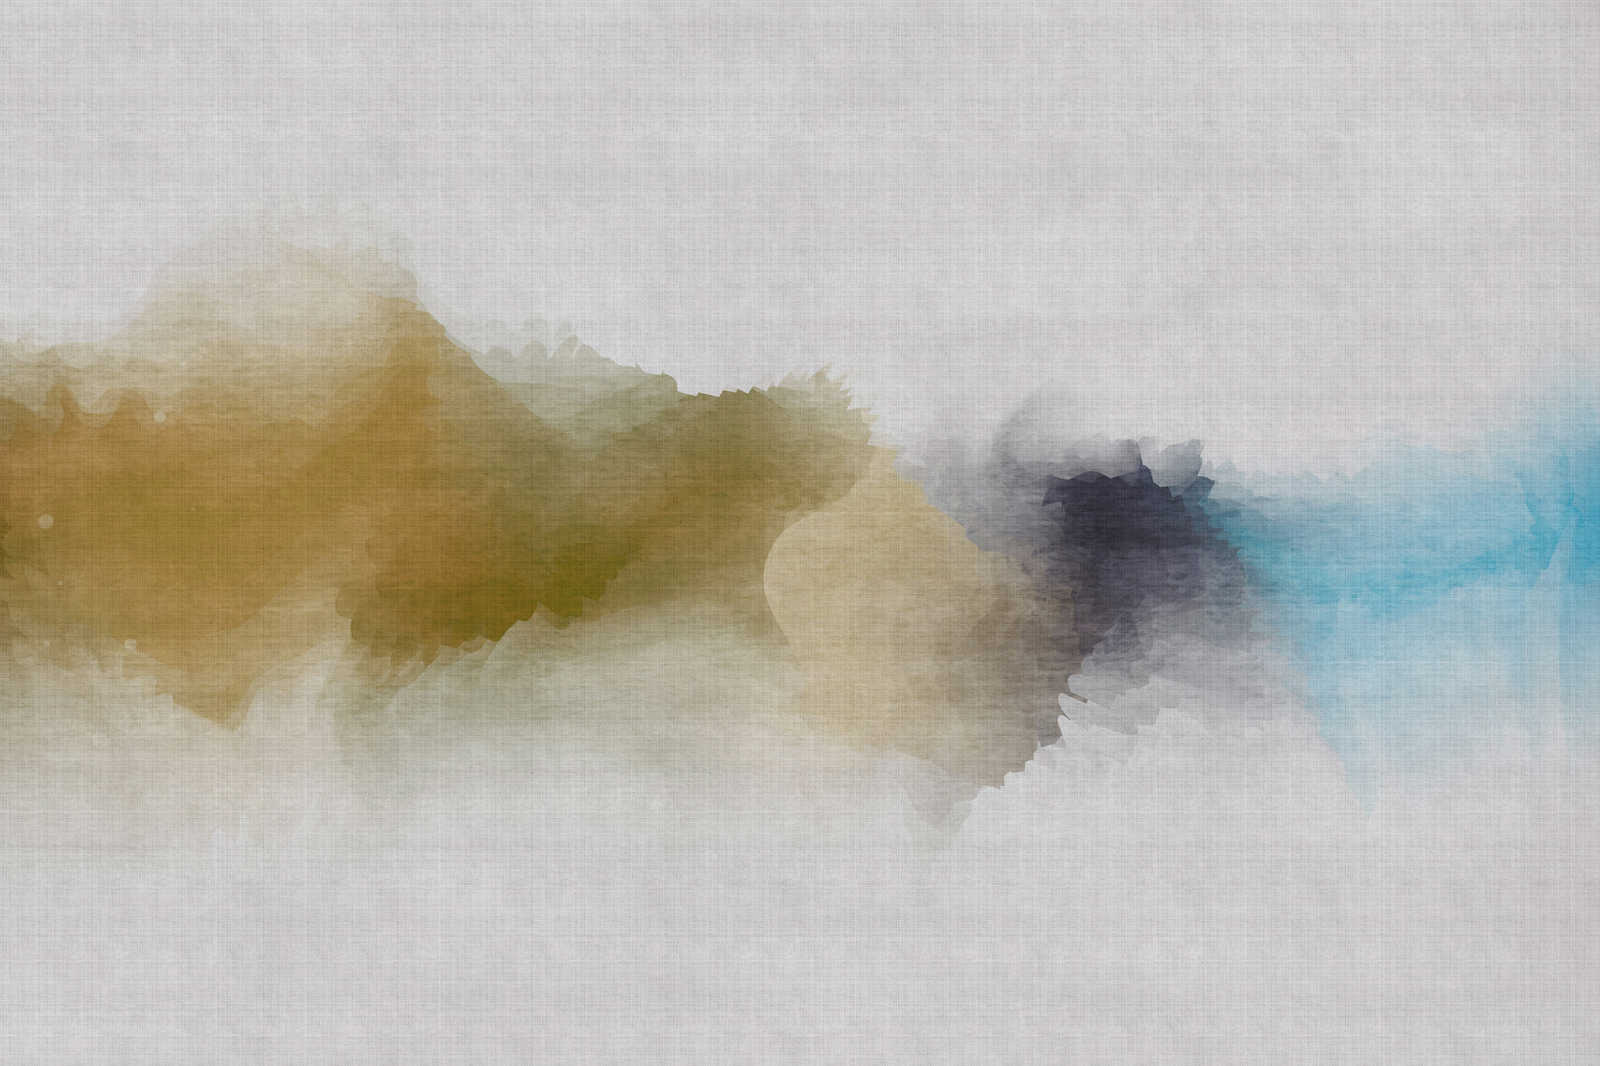             Sogno ad occhi aperti 3 - Tela dipinta con motivo acquerello nuvoloso - struttura in lino naturale - 0,90 m x 0,60 m
        